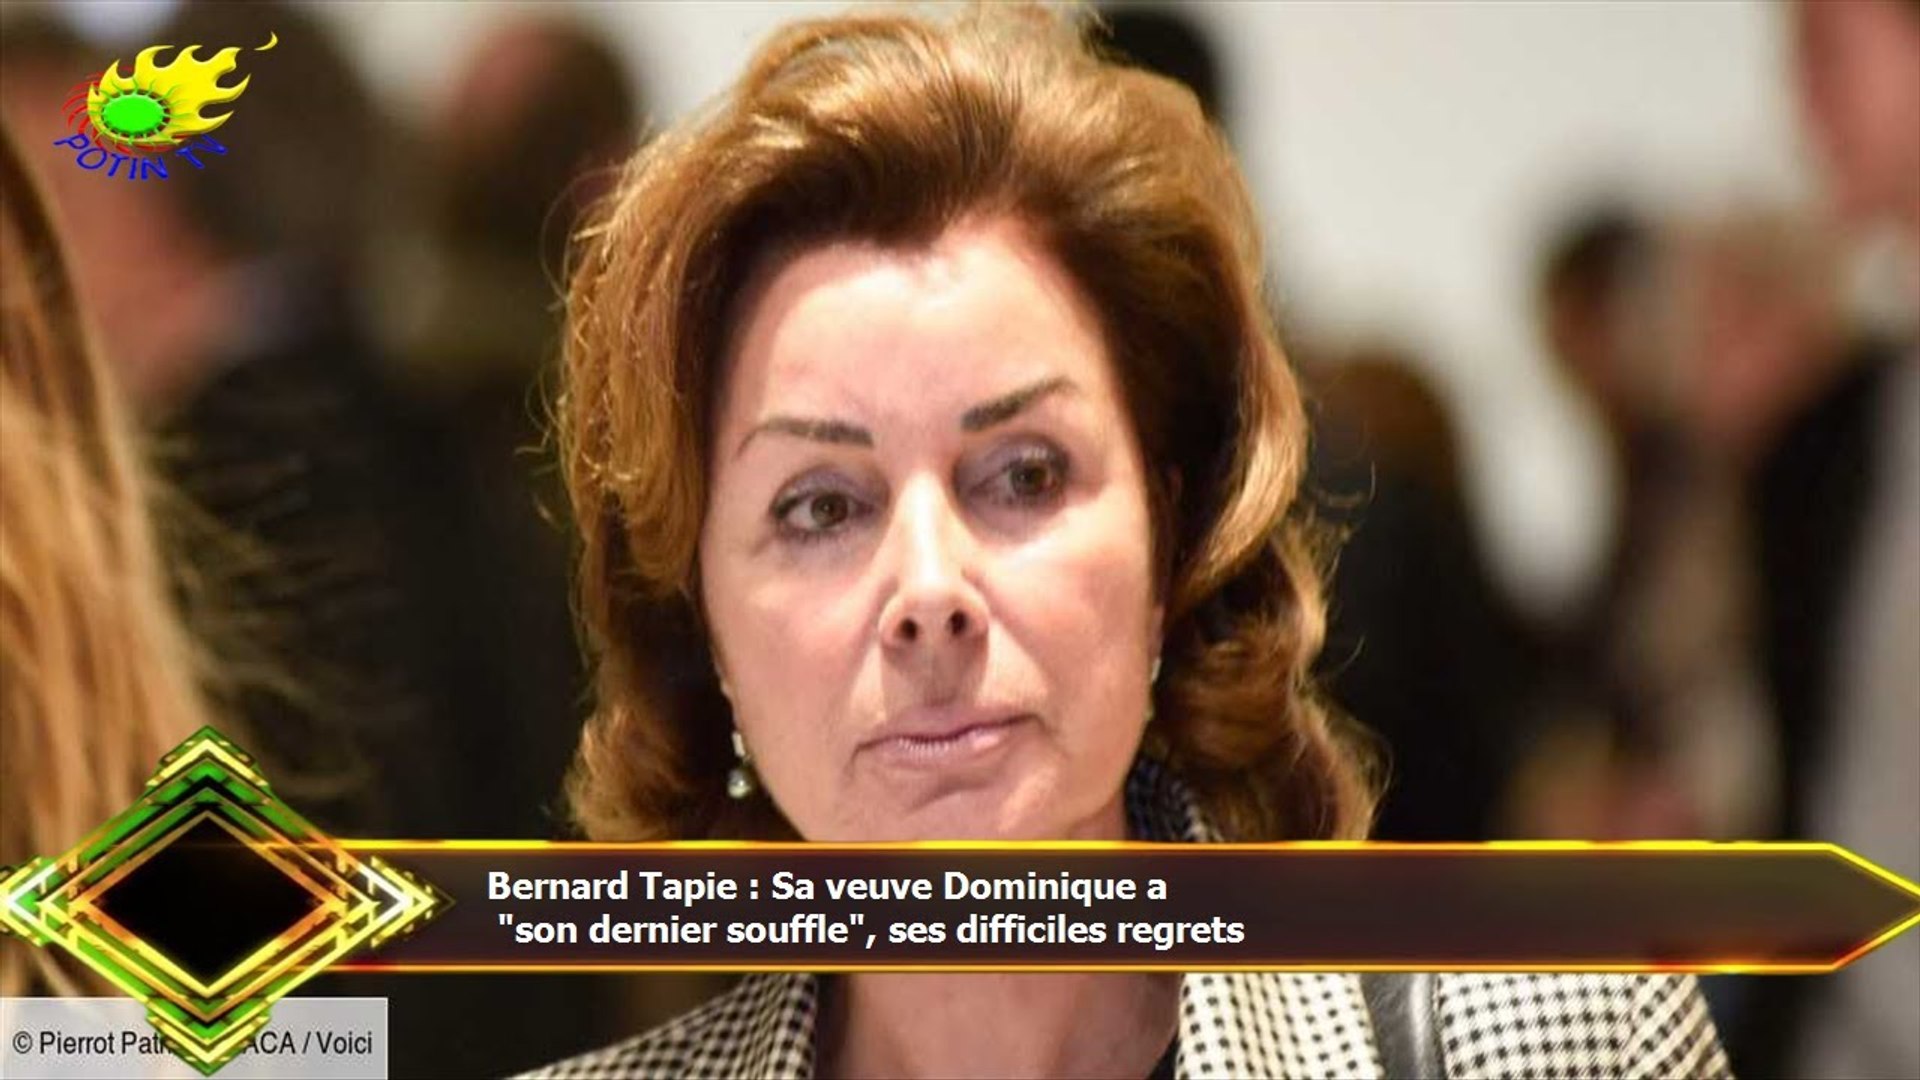 Bernard Tapie : Sa veuve Dominique a "son dernier souffle", ses difficiles  regrets - Vidéo Dailymotion